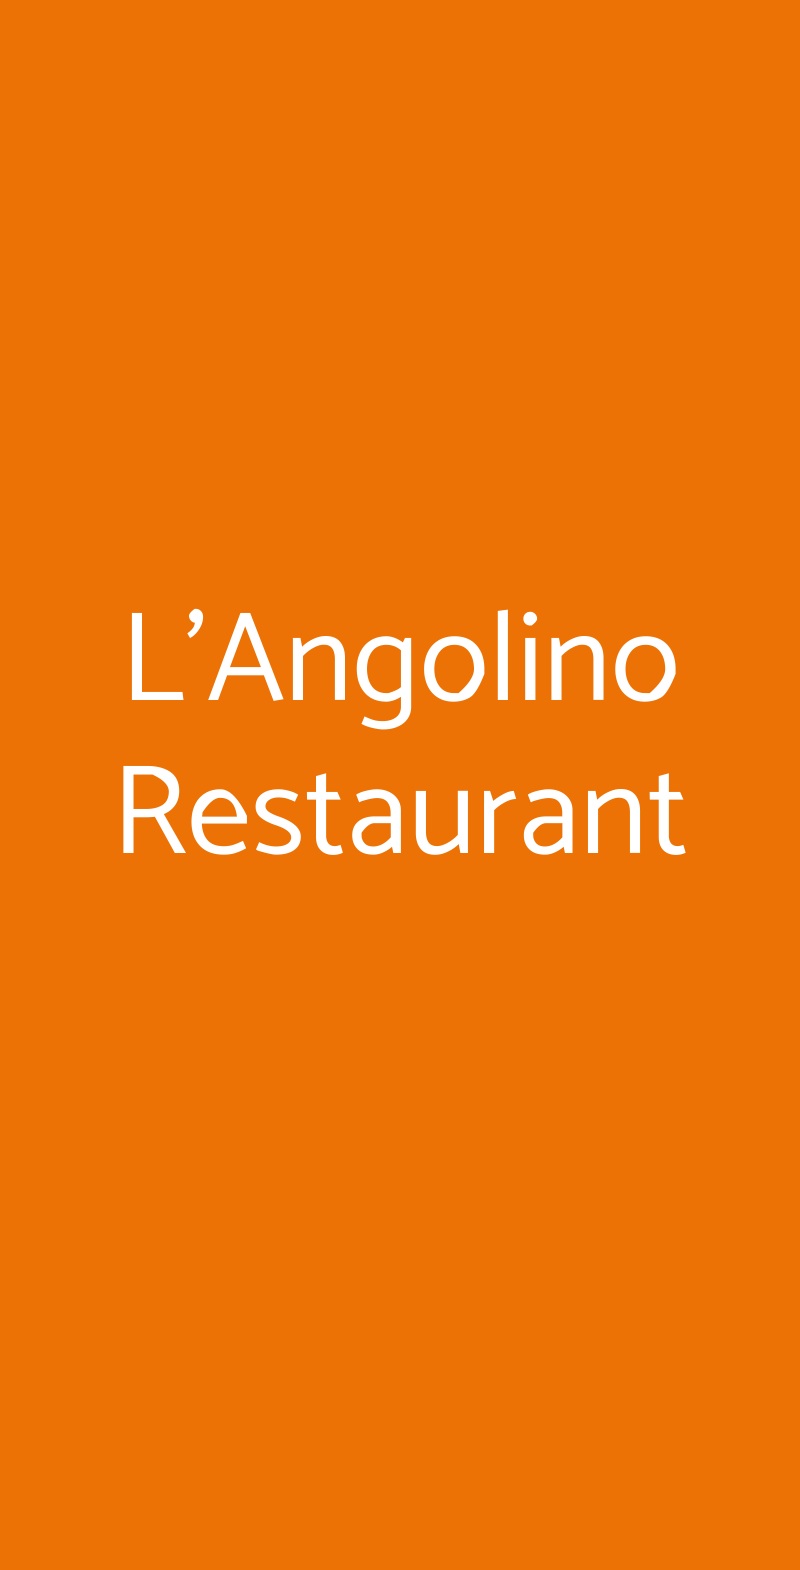 L'Angolino Restaurant Porto Recanati menù 1 pagina